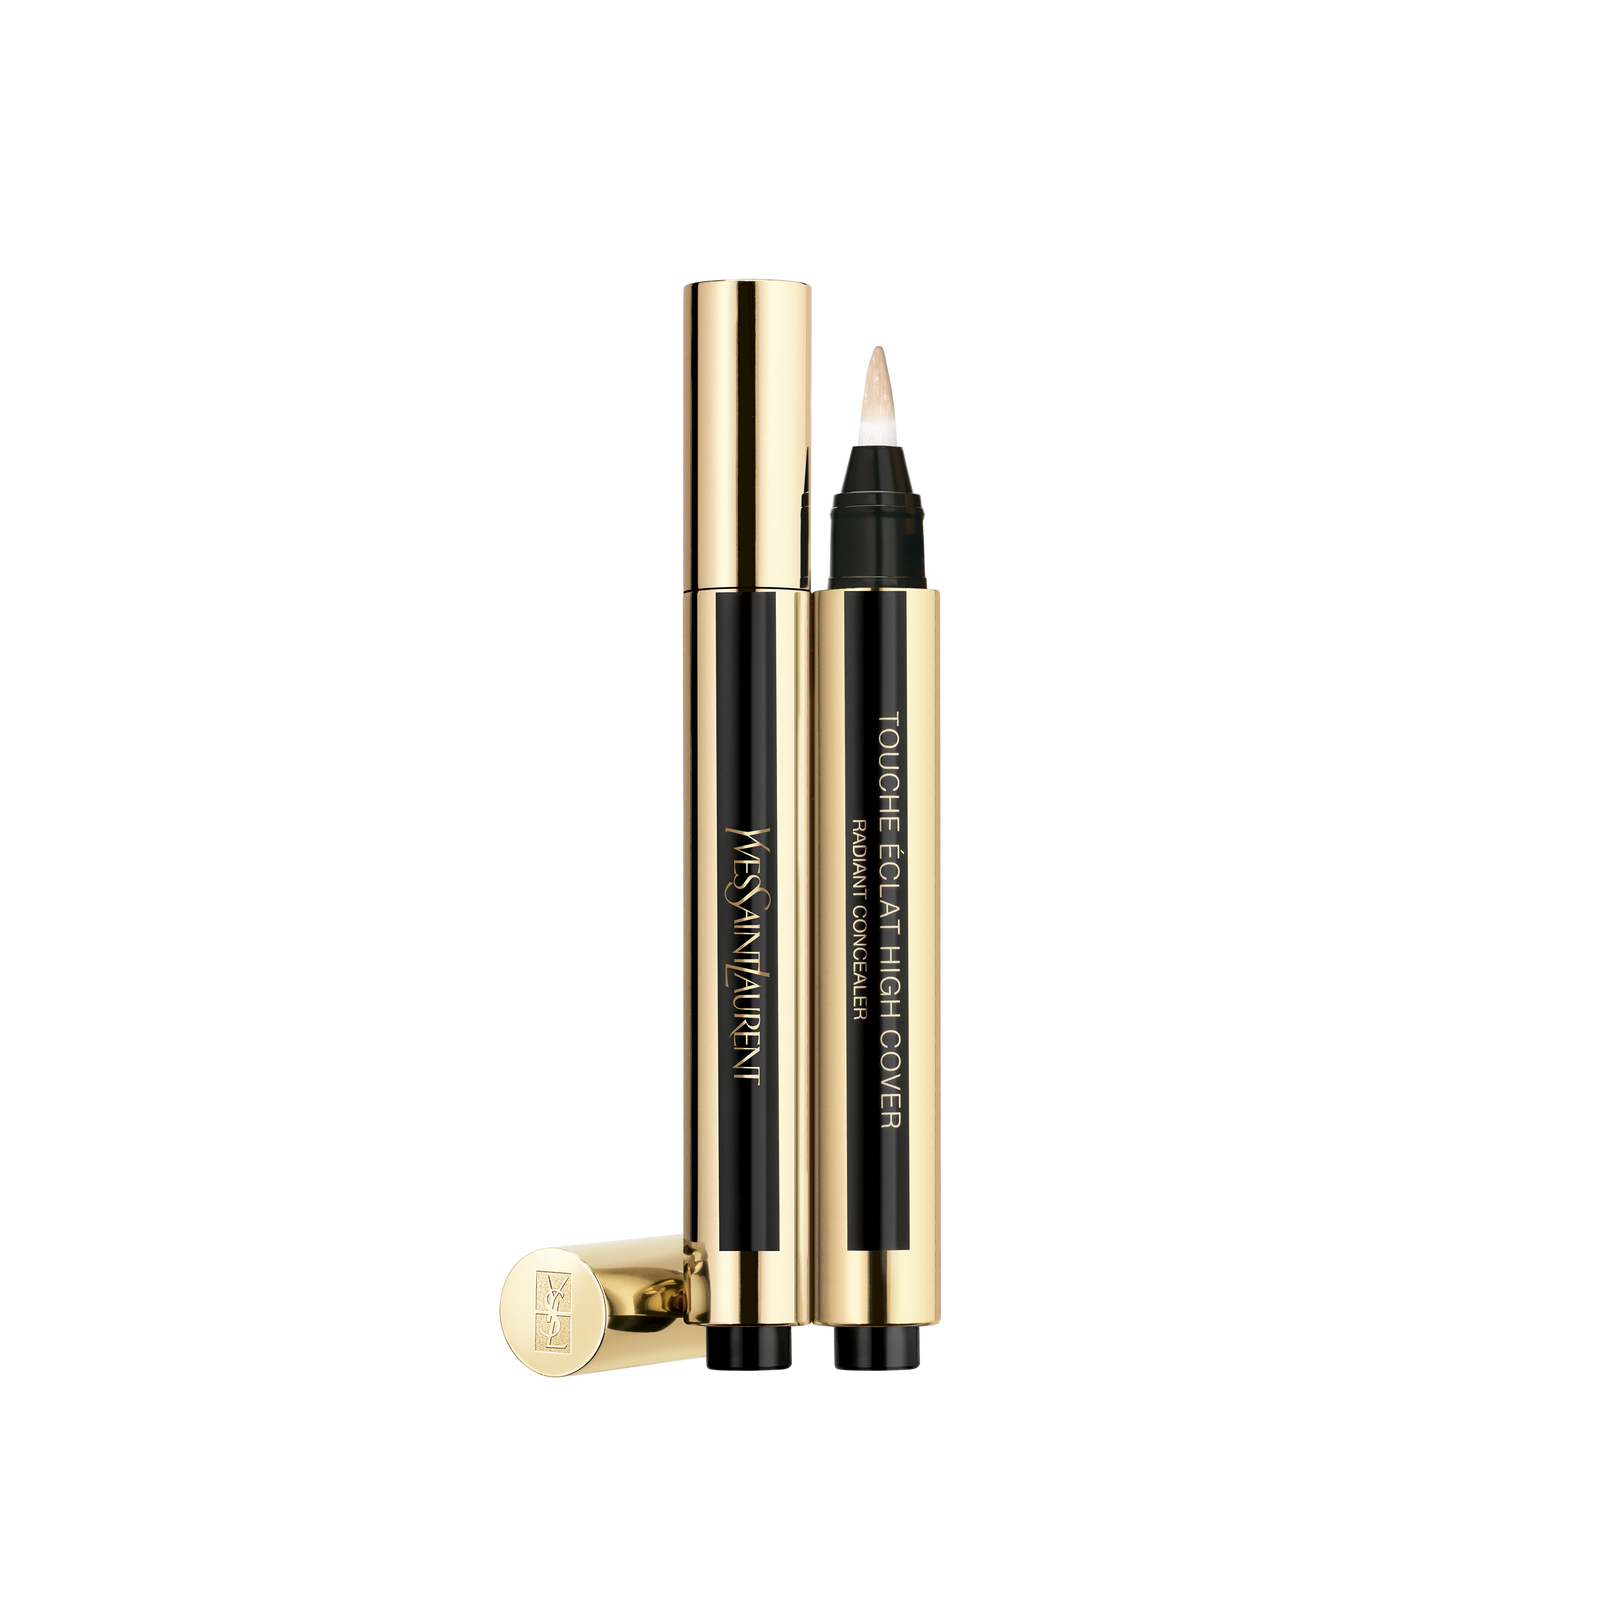 Консилер в формате карандаша Touche Éclat High Cover Yves Saint Laurent Beauty